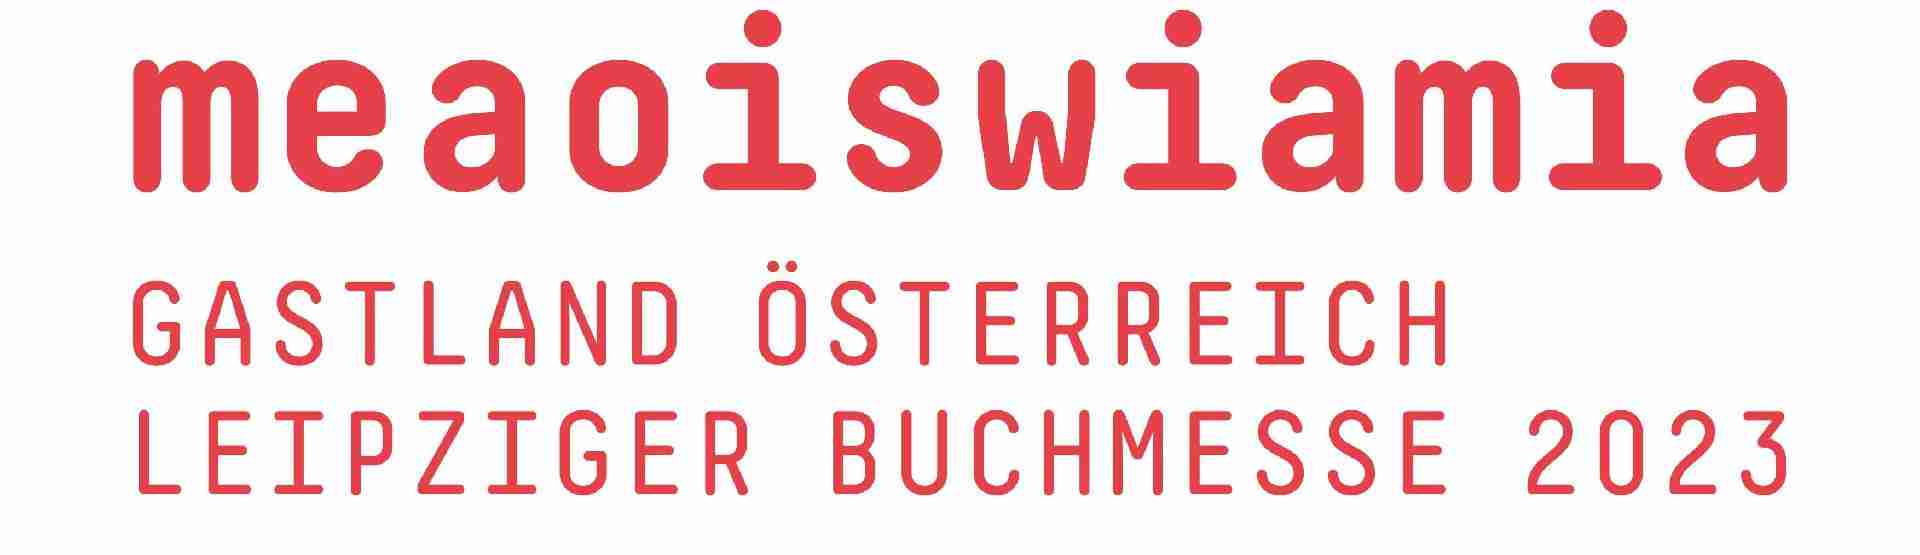 Österreich ist Gastland bei der Leipziger Buchmesse 2023. Unter dem Motto „meaoiswiamia“, sprich „mehr als wir“, lenkt das Gastland-Projekt Österreich bei der LBM 23 das Augenmerk des internationalen Lesepublikums auf seine vielfältige Buchszene